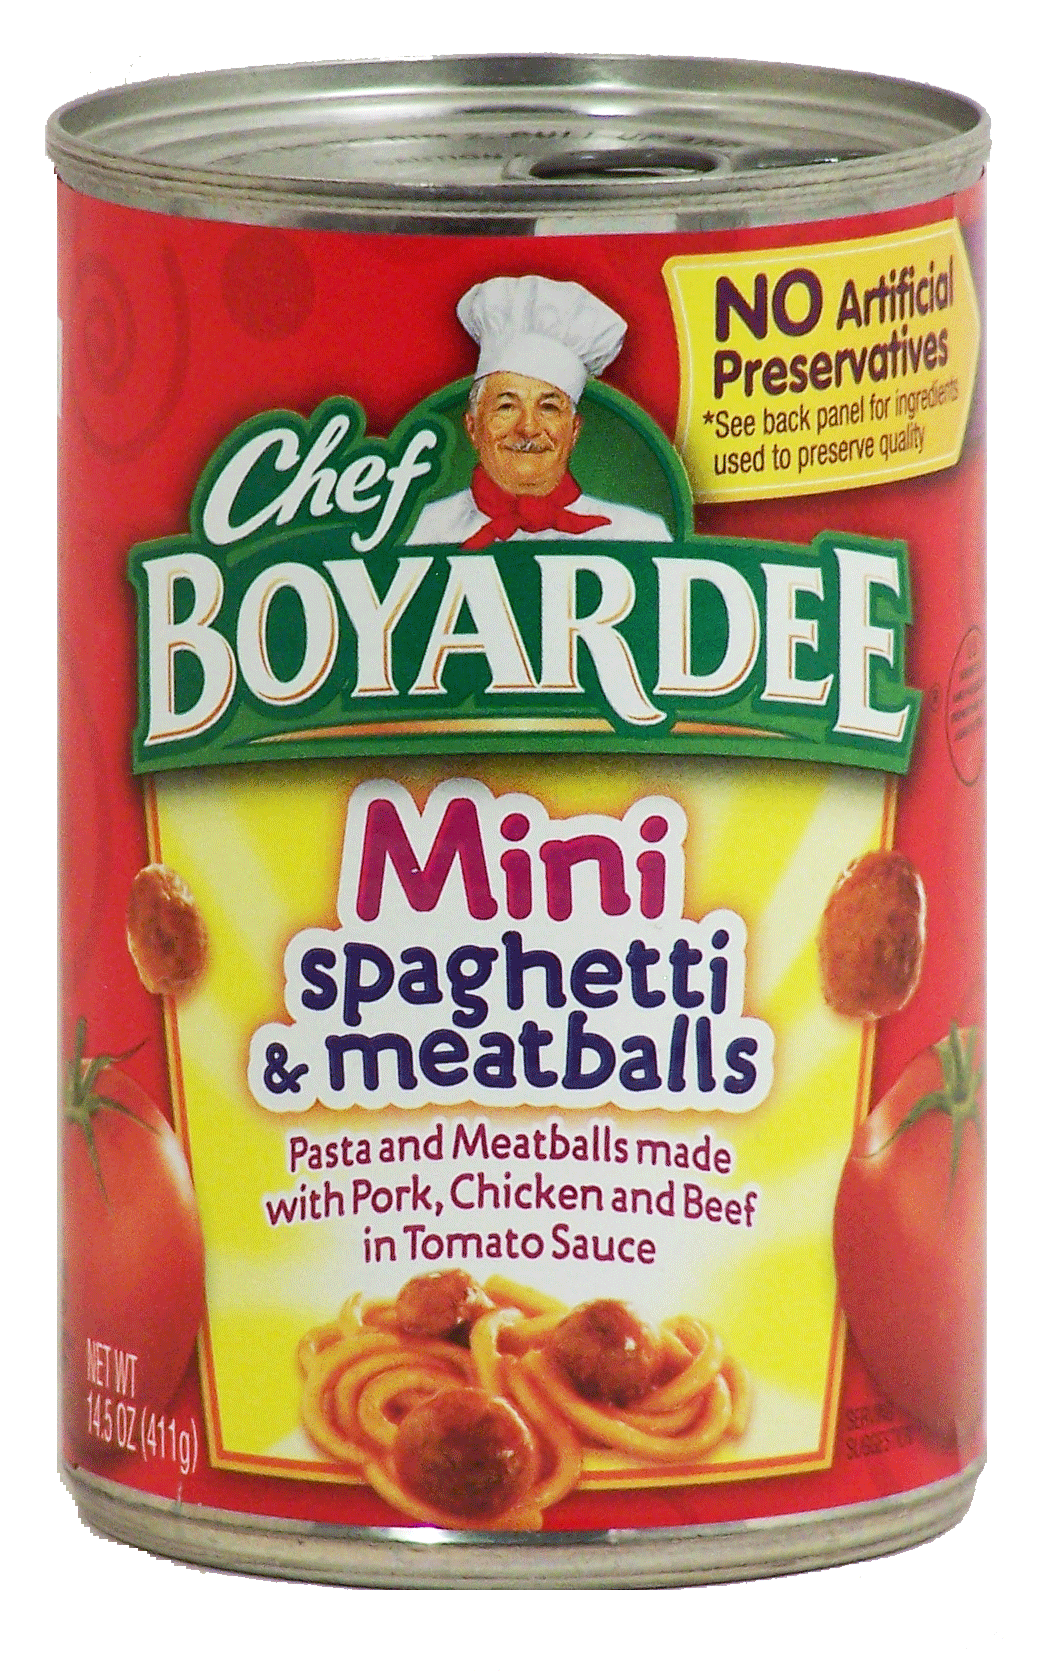 Chef Boyardee Mini spaghetti & meatballs in tomato sauce Full-Size Picture